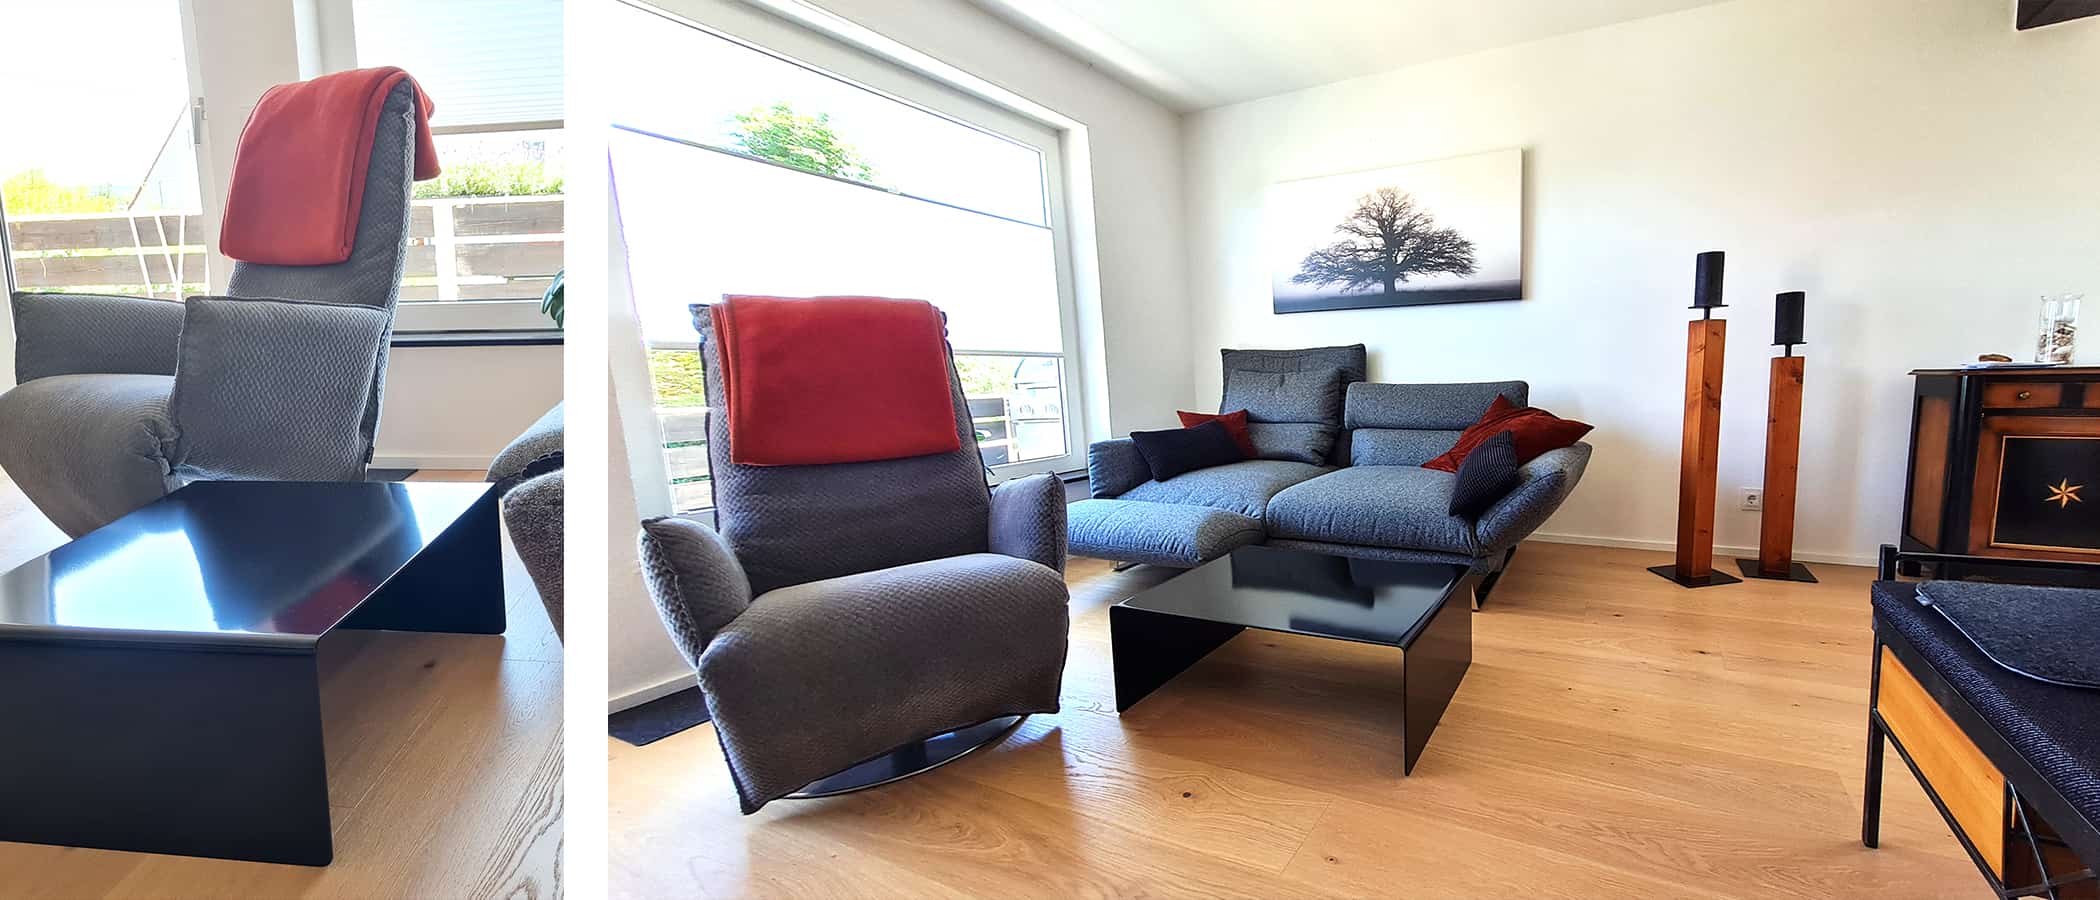 moebel-online-kaufen-stahlzart-couchtisch-rund-schwarz-metall-modern-quadratisch-designer-industrial-style-minimalistisch-wohnzimmer-sessel-sofa-ideen